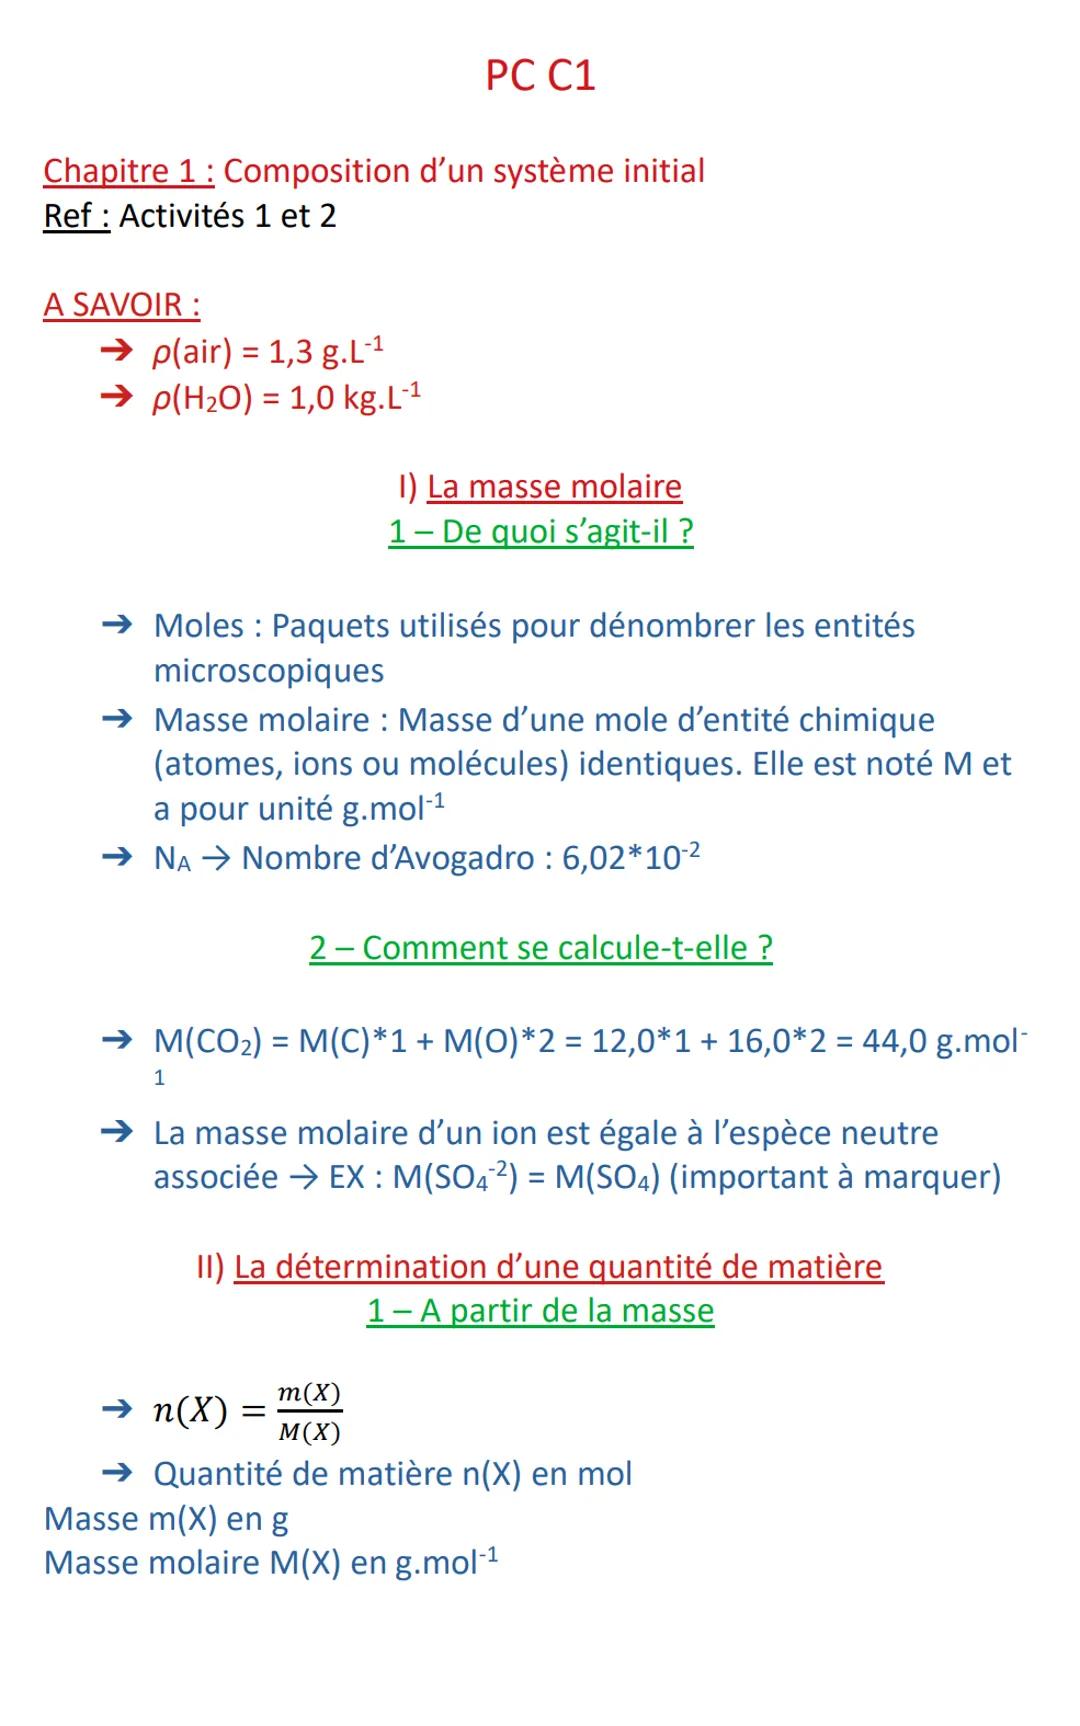 Chapitre 1: Composition d'un système initial
Ref: Activités 1 et 2
A SAVOIR :
→p(air) = 1,3 g.L-¹
→p(H₂O) = 1,0 kg.L-¹
PC C1
→ Moles: Paquet